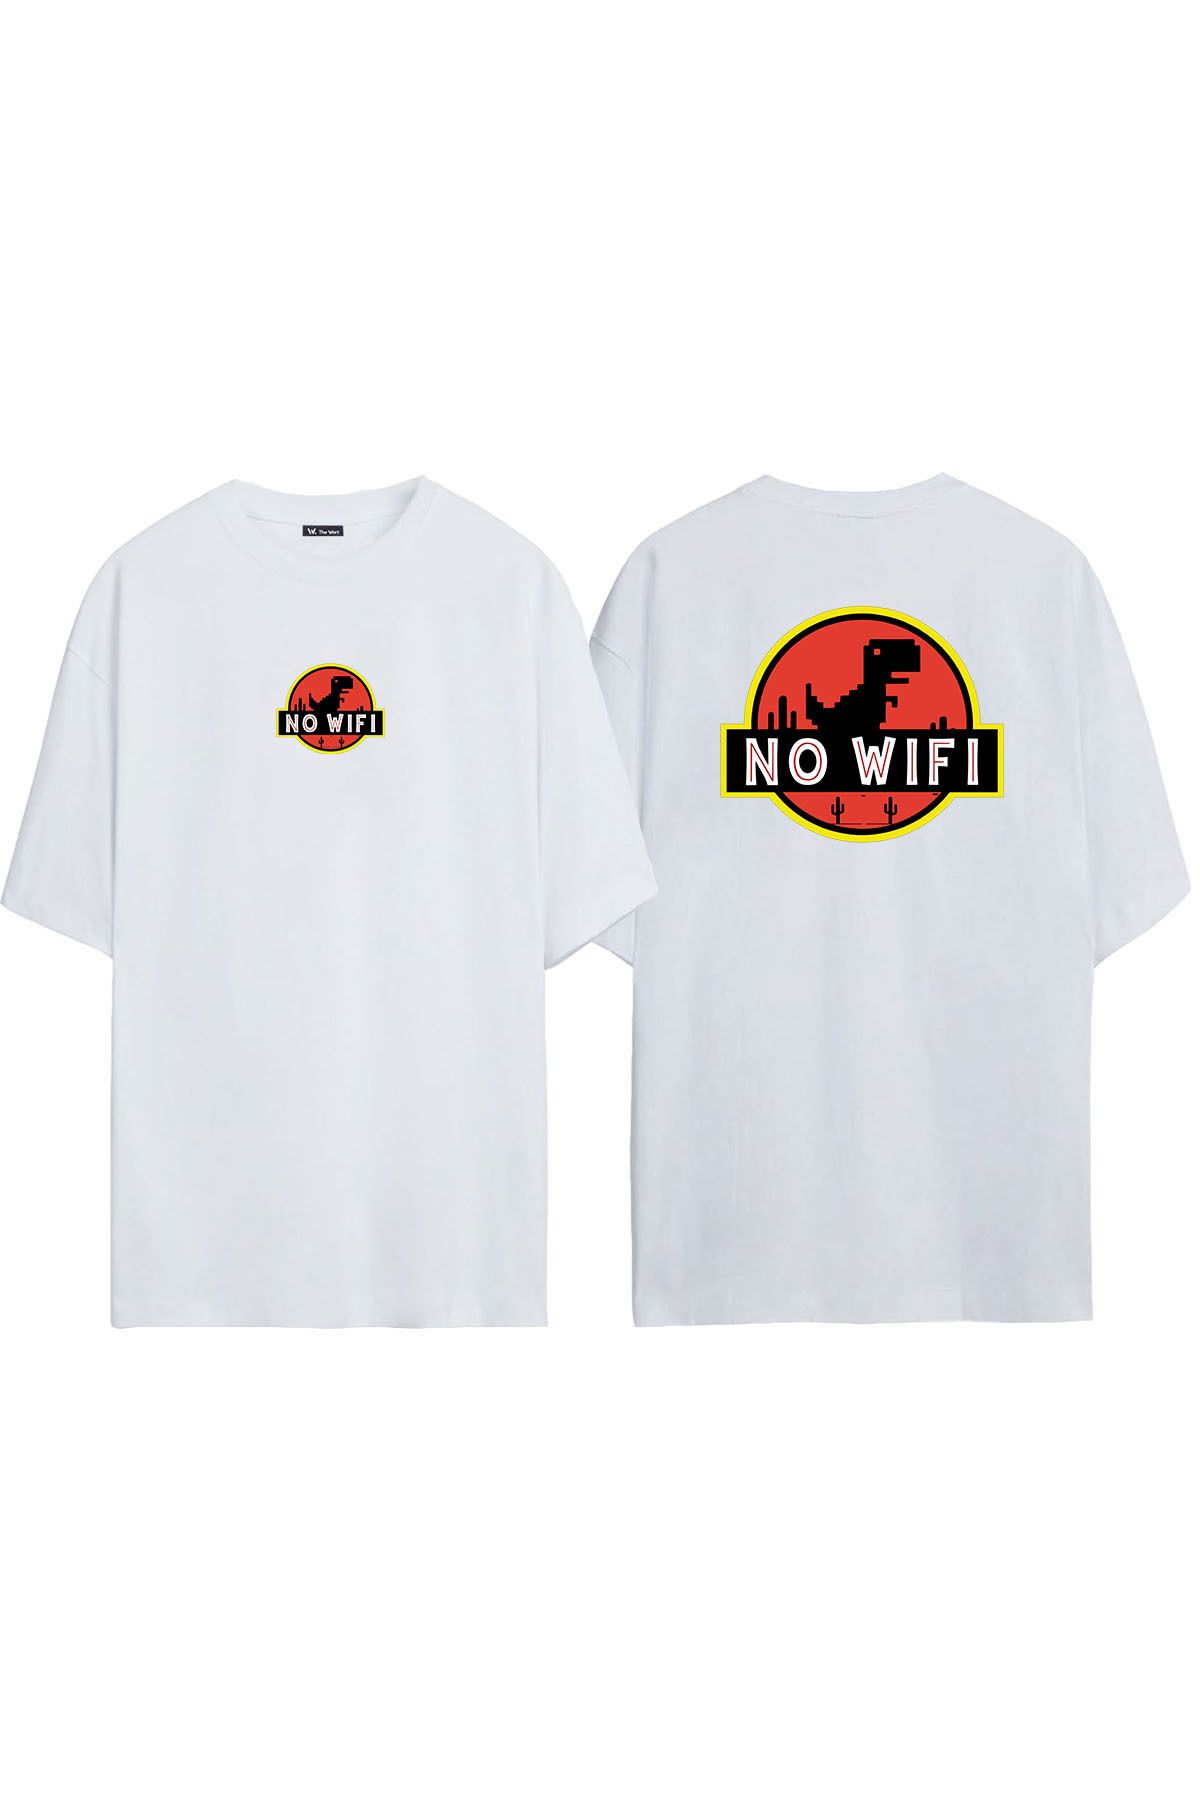 THEWERT Unisex No Wifi Dinazor Oyunu Ön Arka Baskılı Beyaz Oversize T-shirt